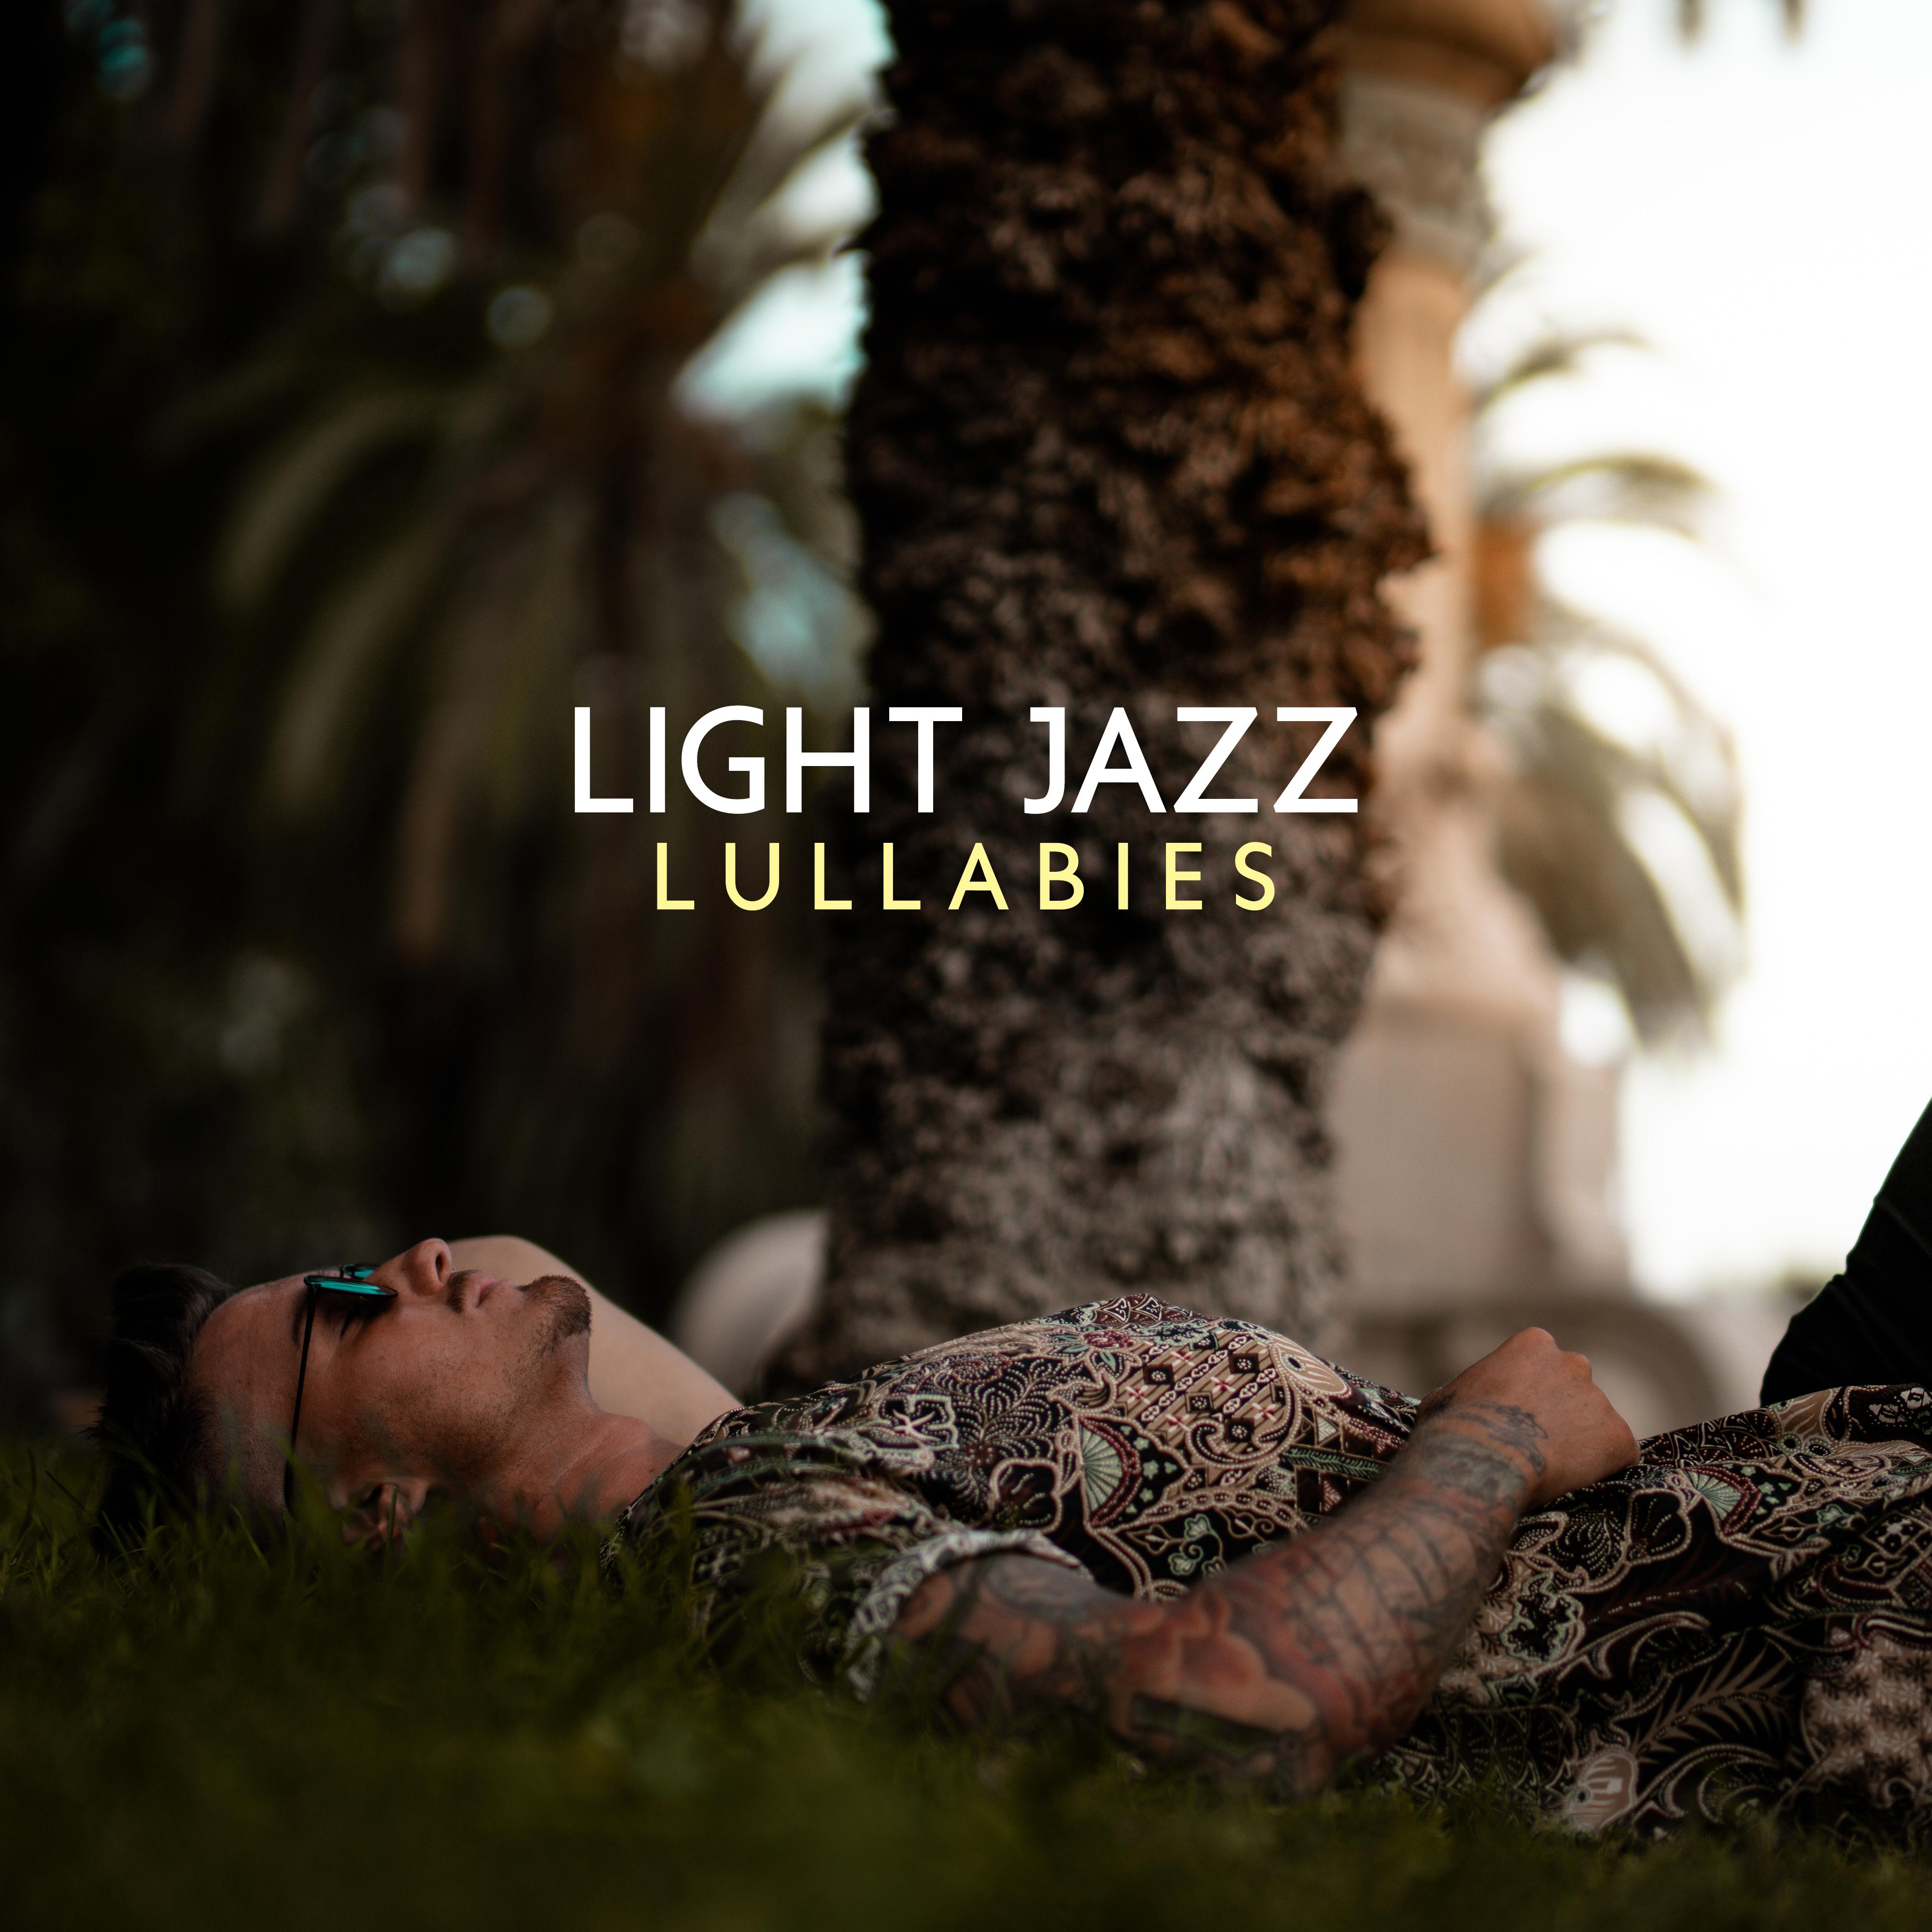 Light Jazz Lullabies  Night Jazz, Calming Sounds for Relaxation, Sleep, Rest, Soft Lullabies, Jazz Lounge, Deeper Sleep